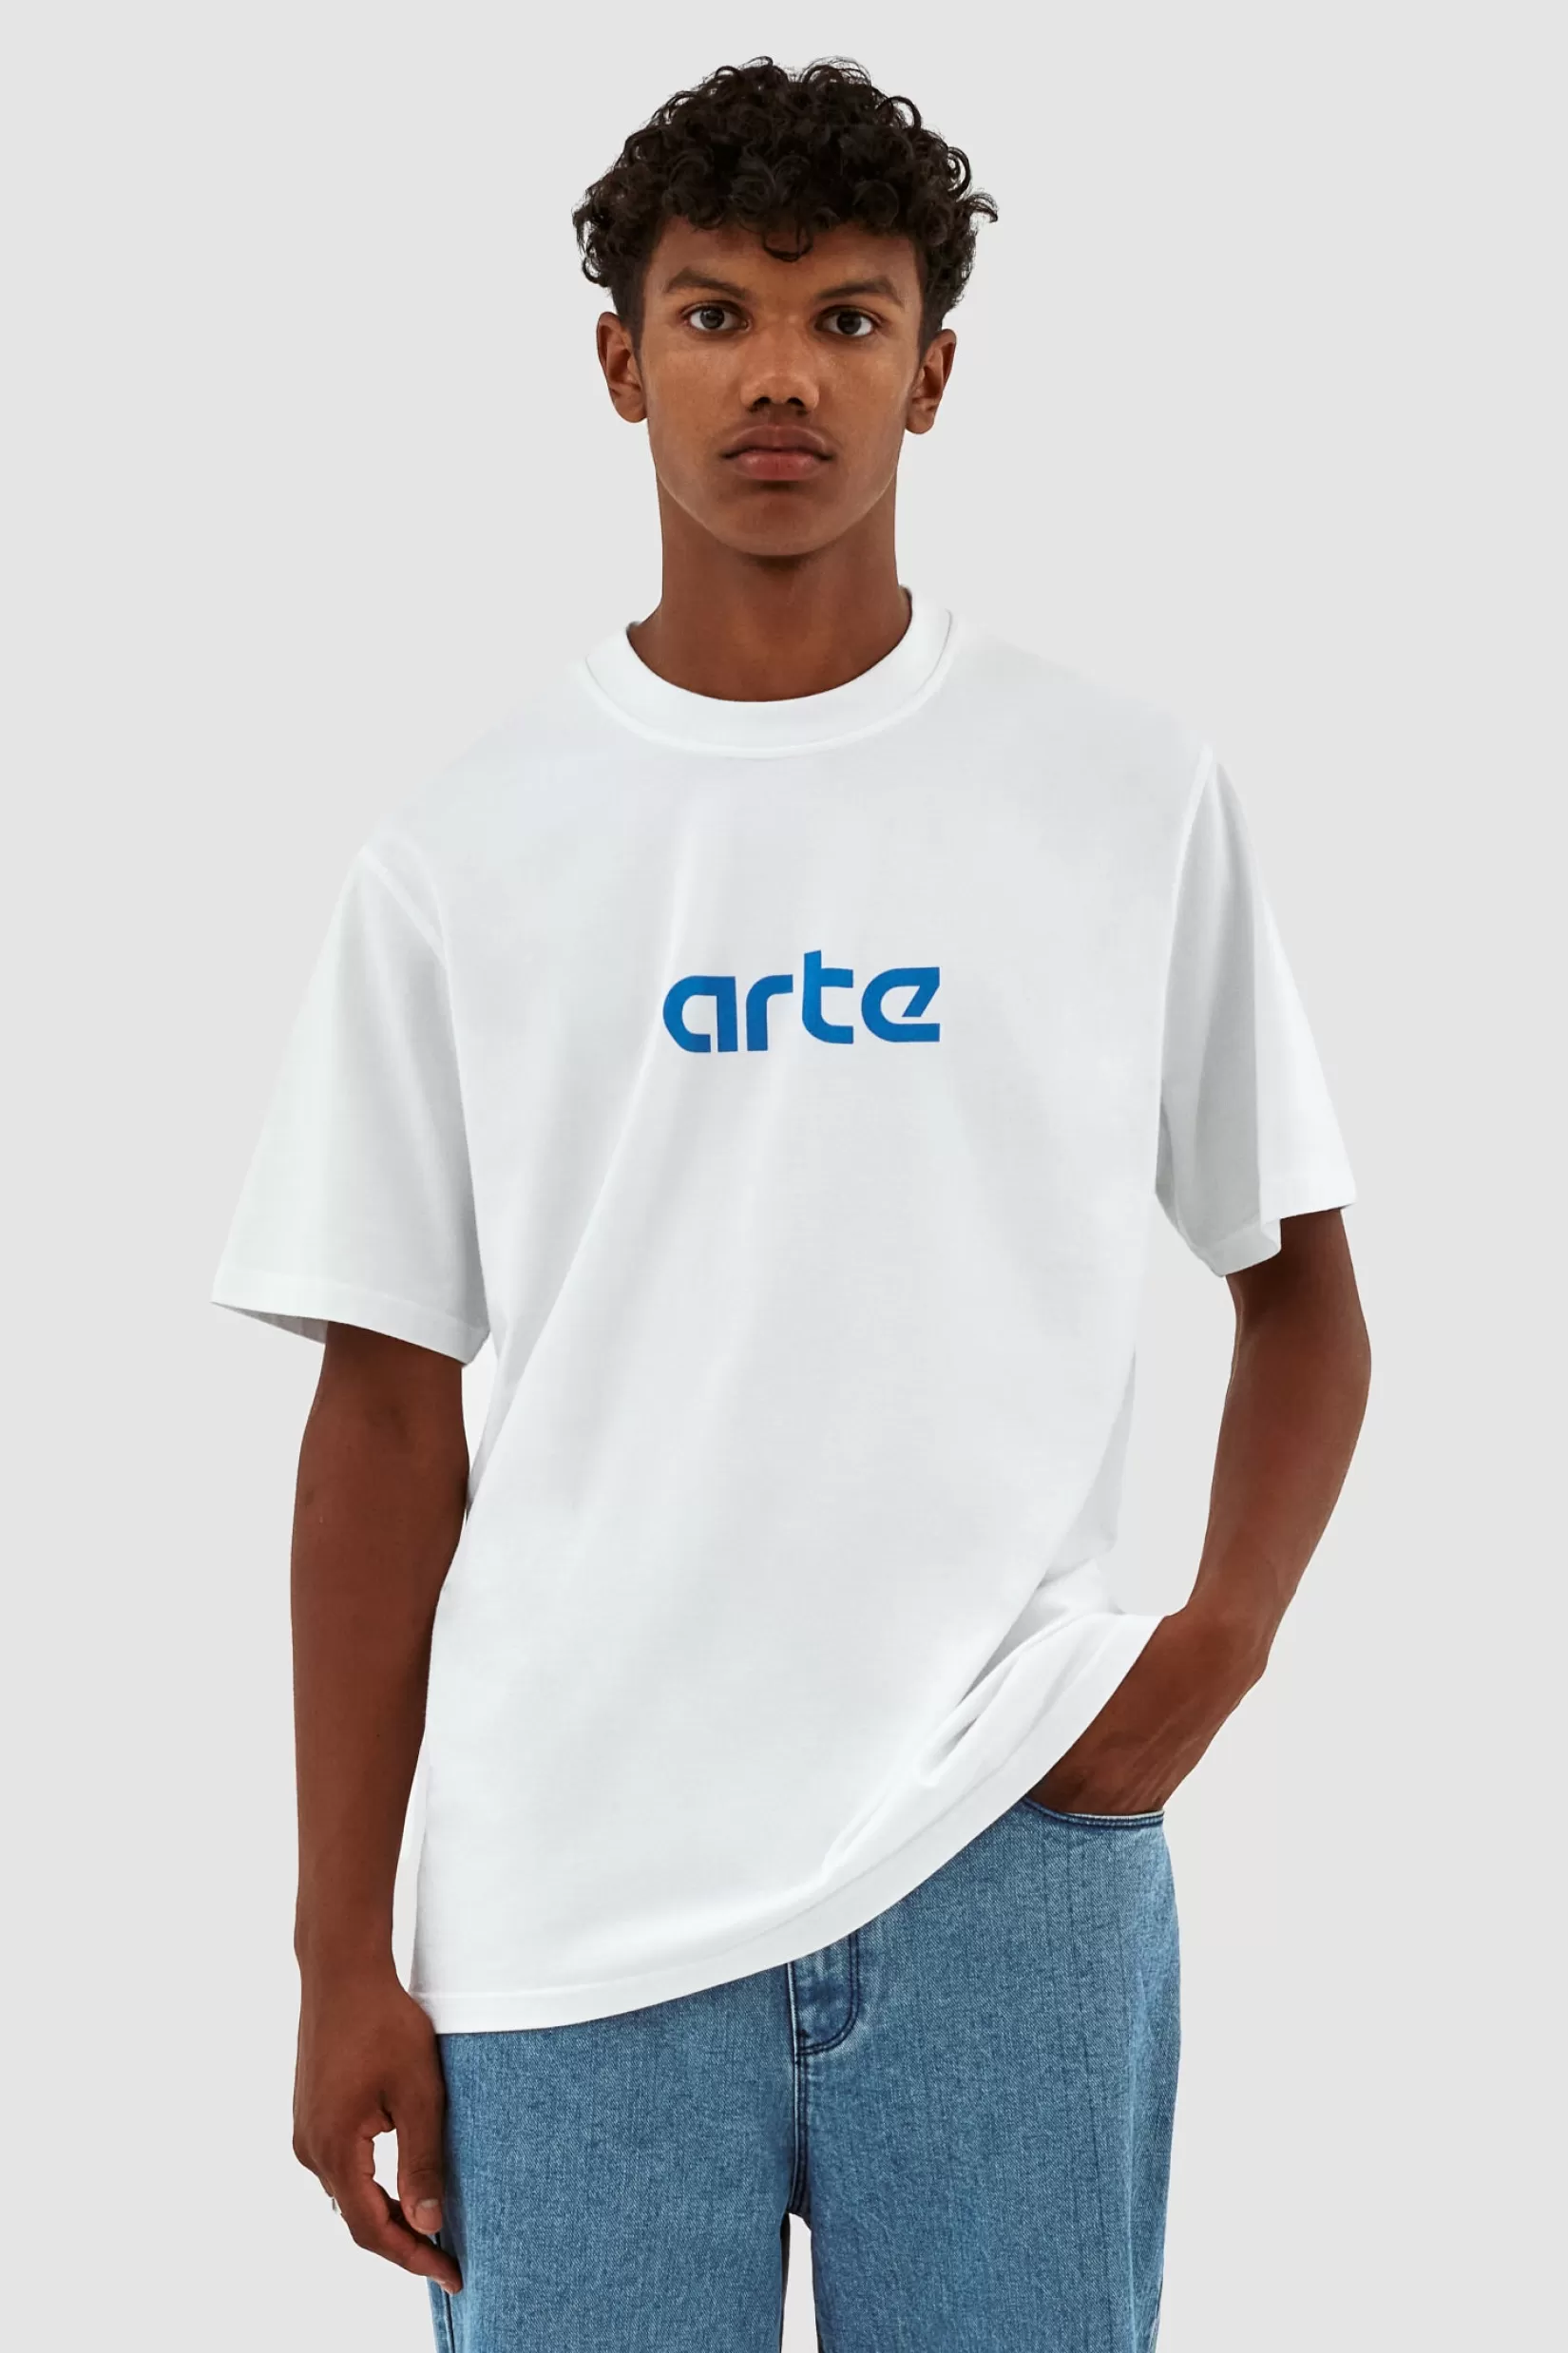 Hot Teo Arte T-shirt T-shirts